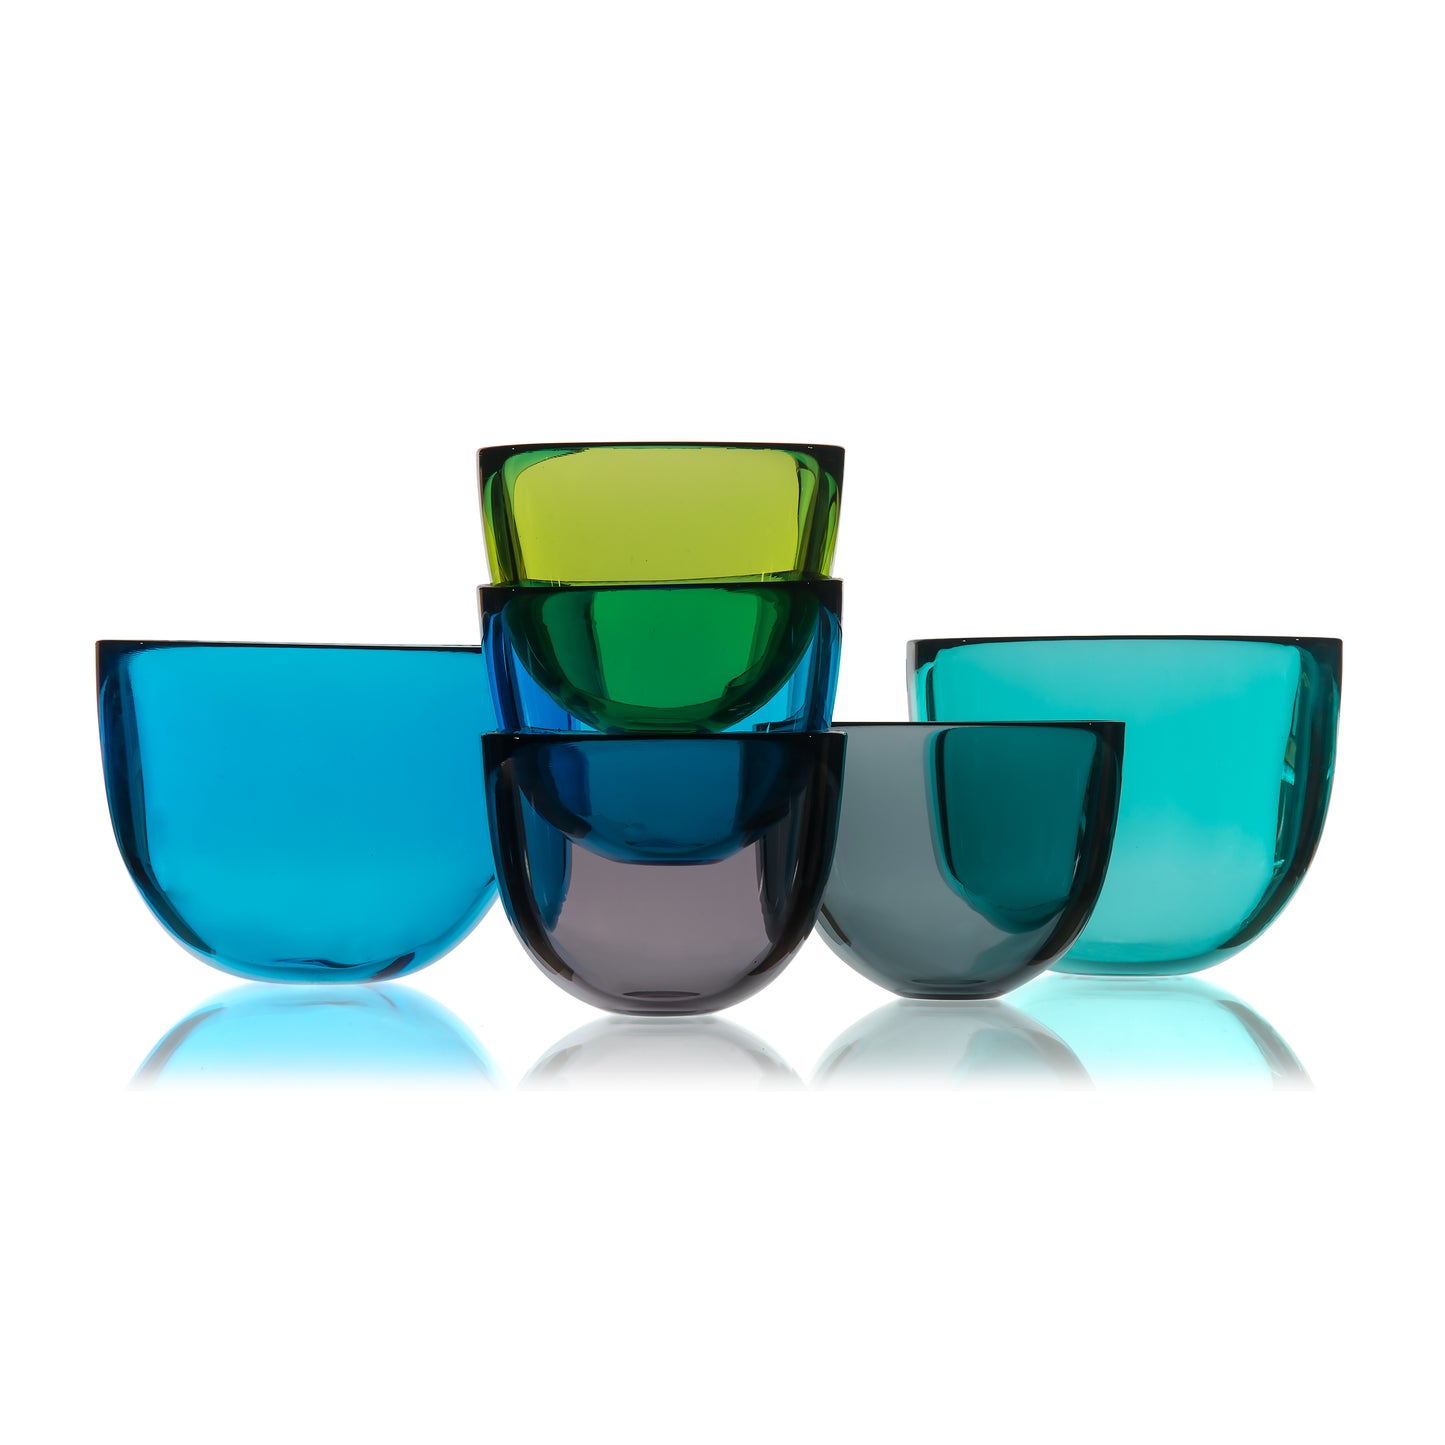 David Mellor Glass Bowl